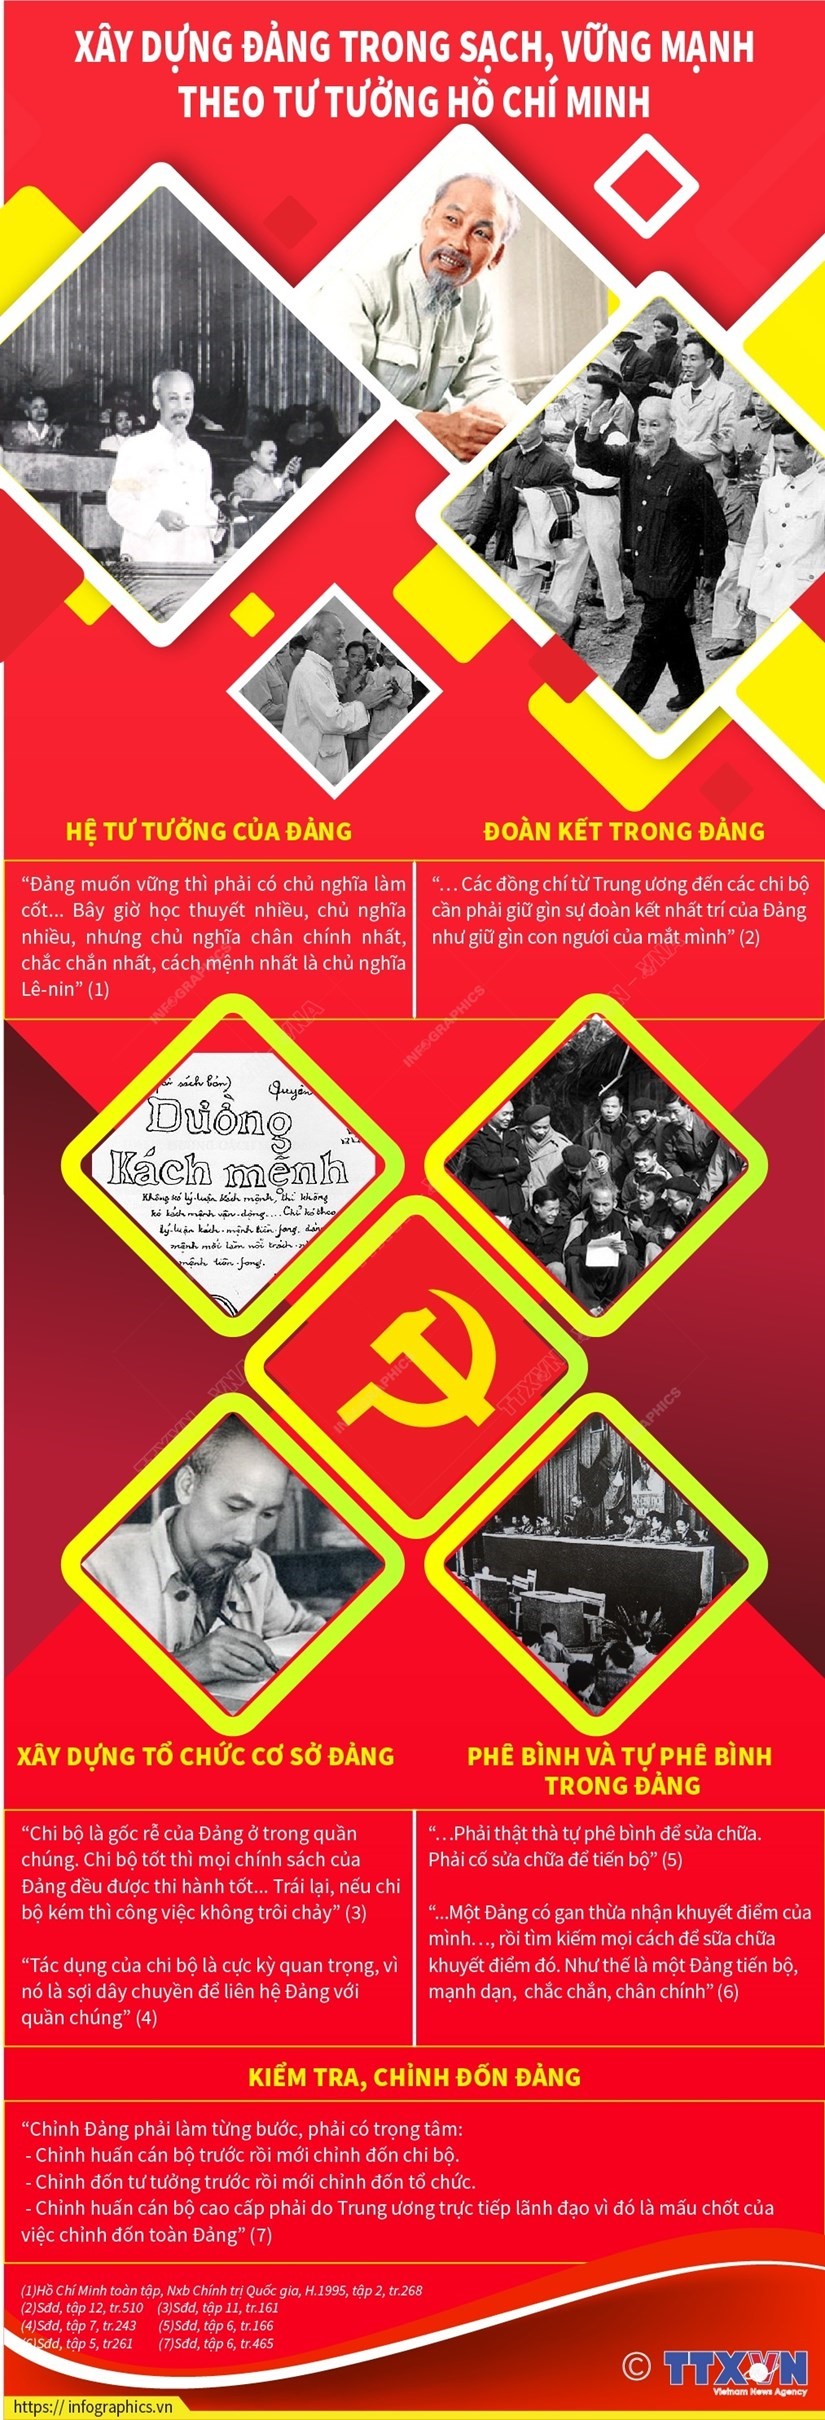 Xây Dựng Đảng Trong Sạch, Vững Mạnh Theo Tư Tưởng Hồ Chí Minh